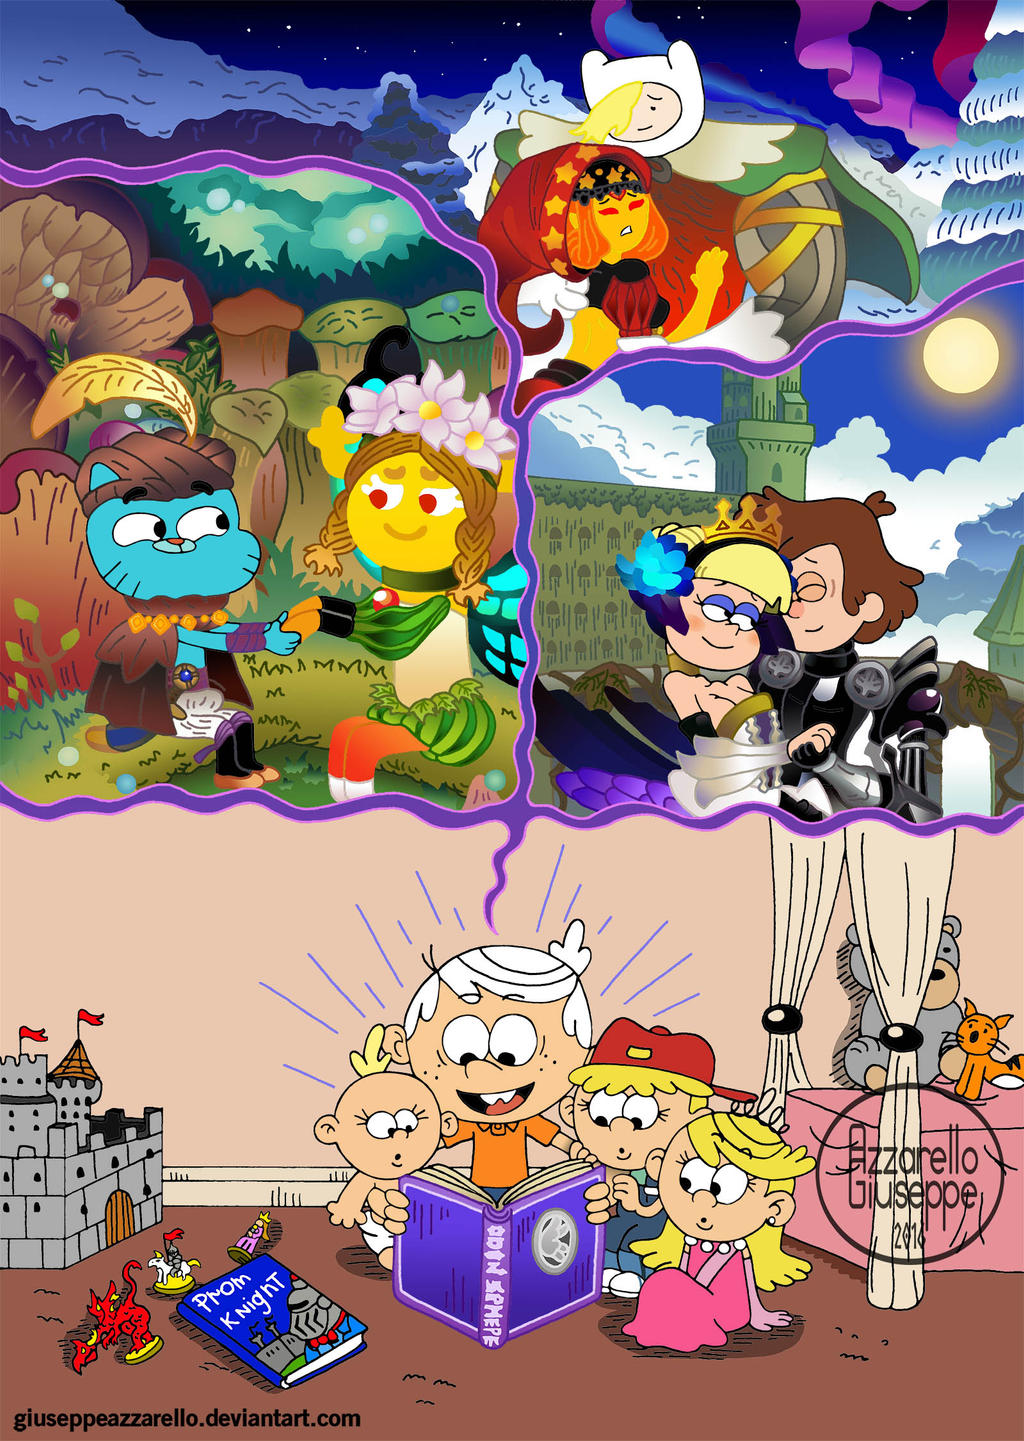 What if Cartoon Cartoon Summer Resort got a Reboot by con1011 on DeviantArt